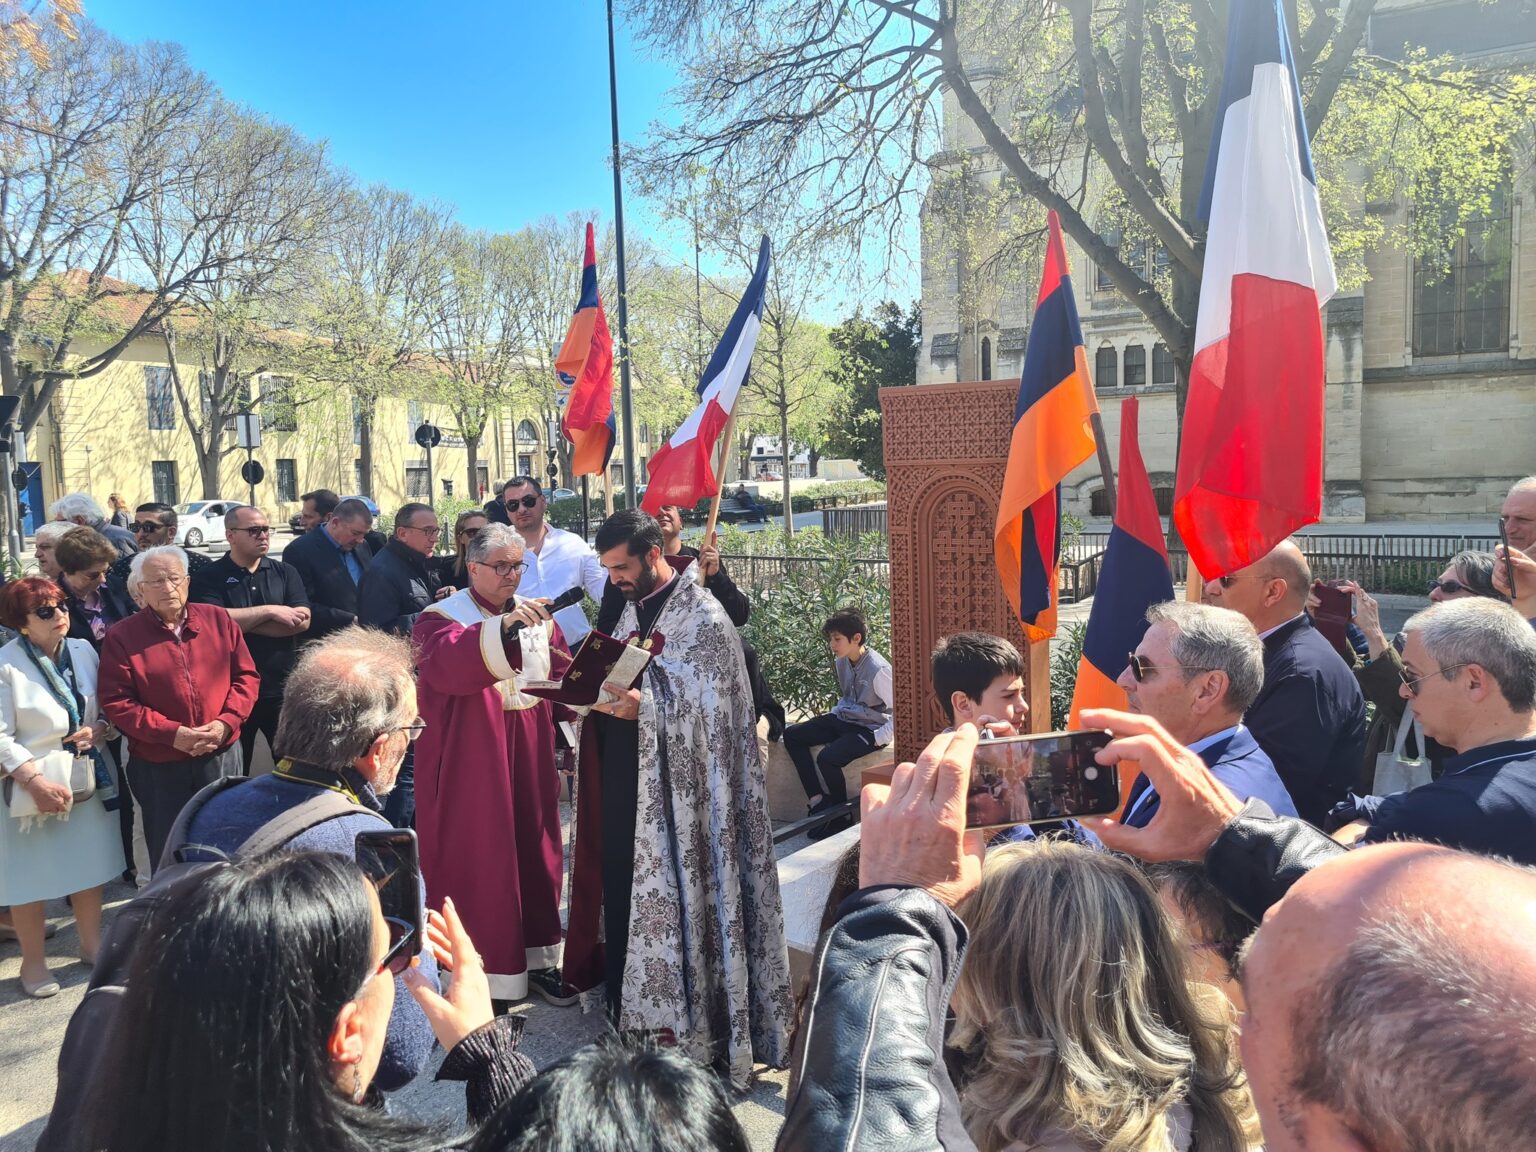 Ֆրանսիայի Նիմ քաղաքում հանդիսավորությամբ բացել են Հայոց ցեղասպանության զոհերի հիշատակին նվիրված հրապարակը